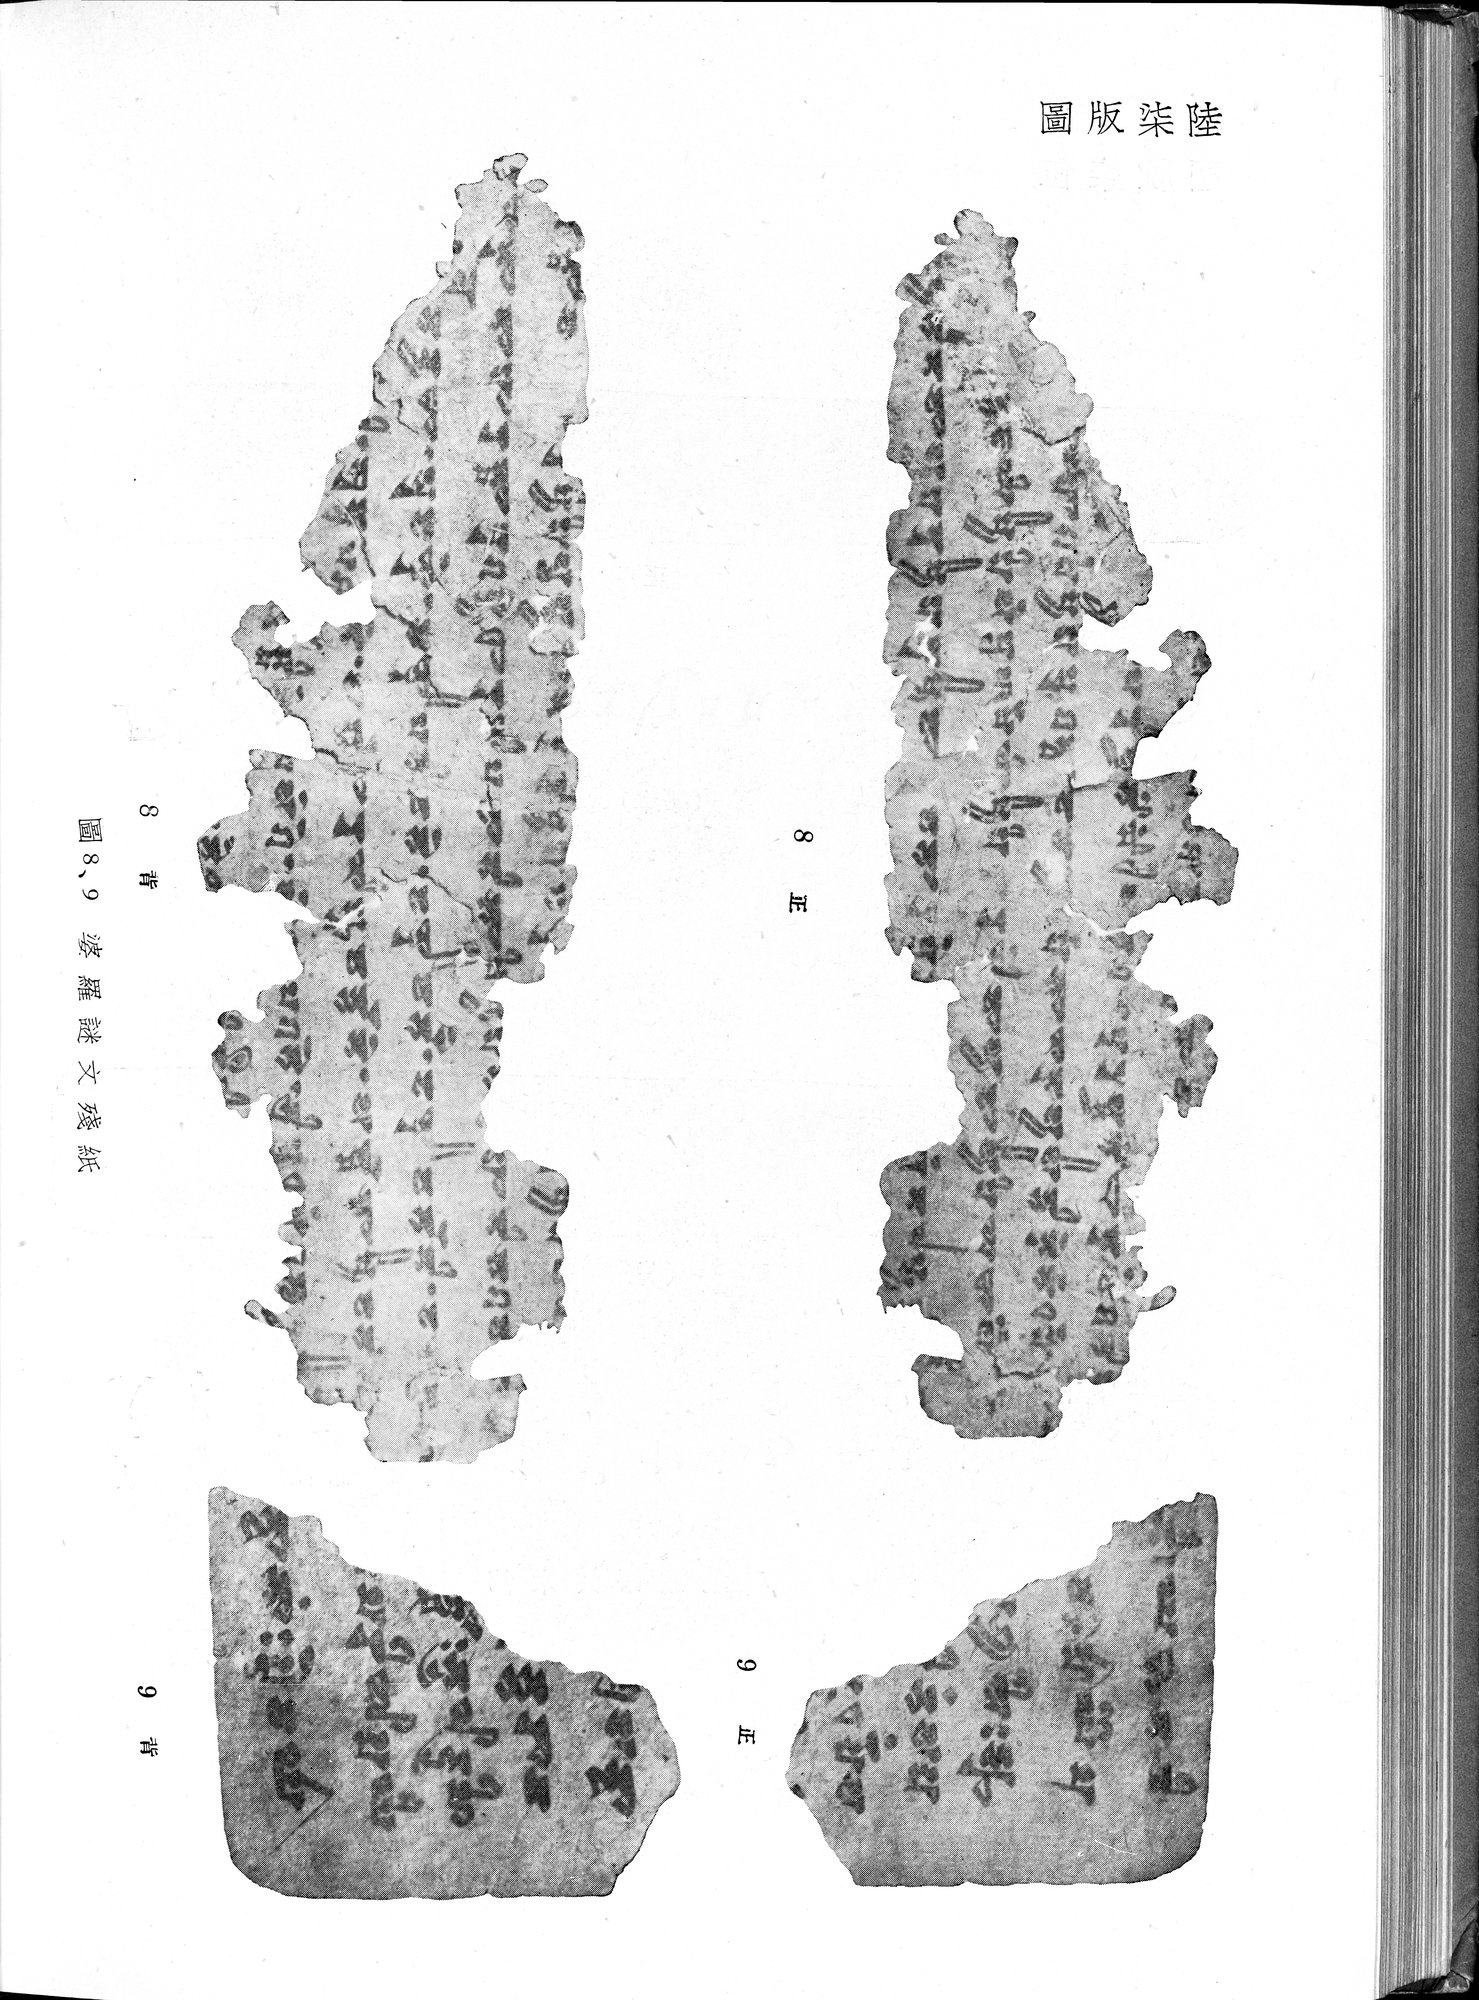 塔里木盆地考古記 : vol.1 / Page 310 (Grayscale High Resolution Image)